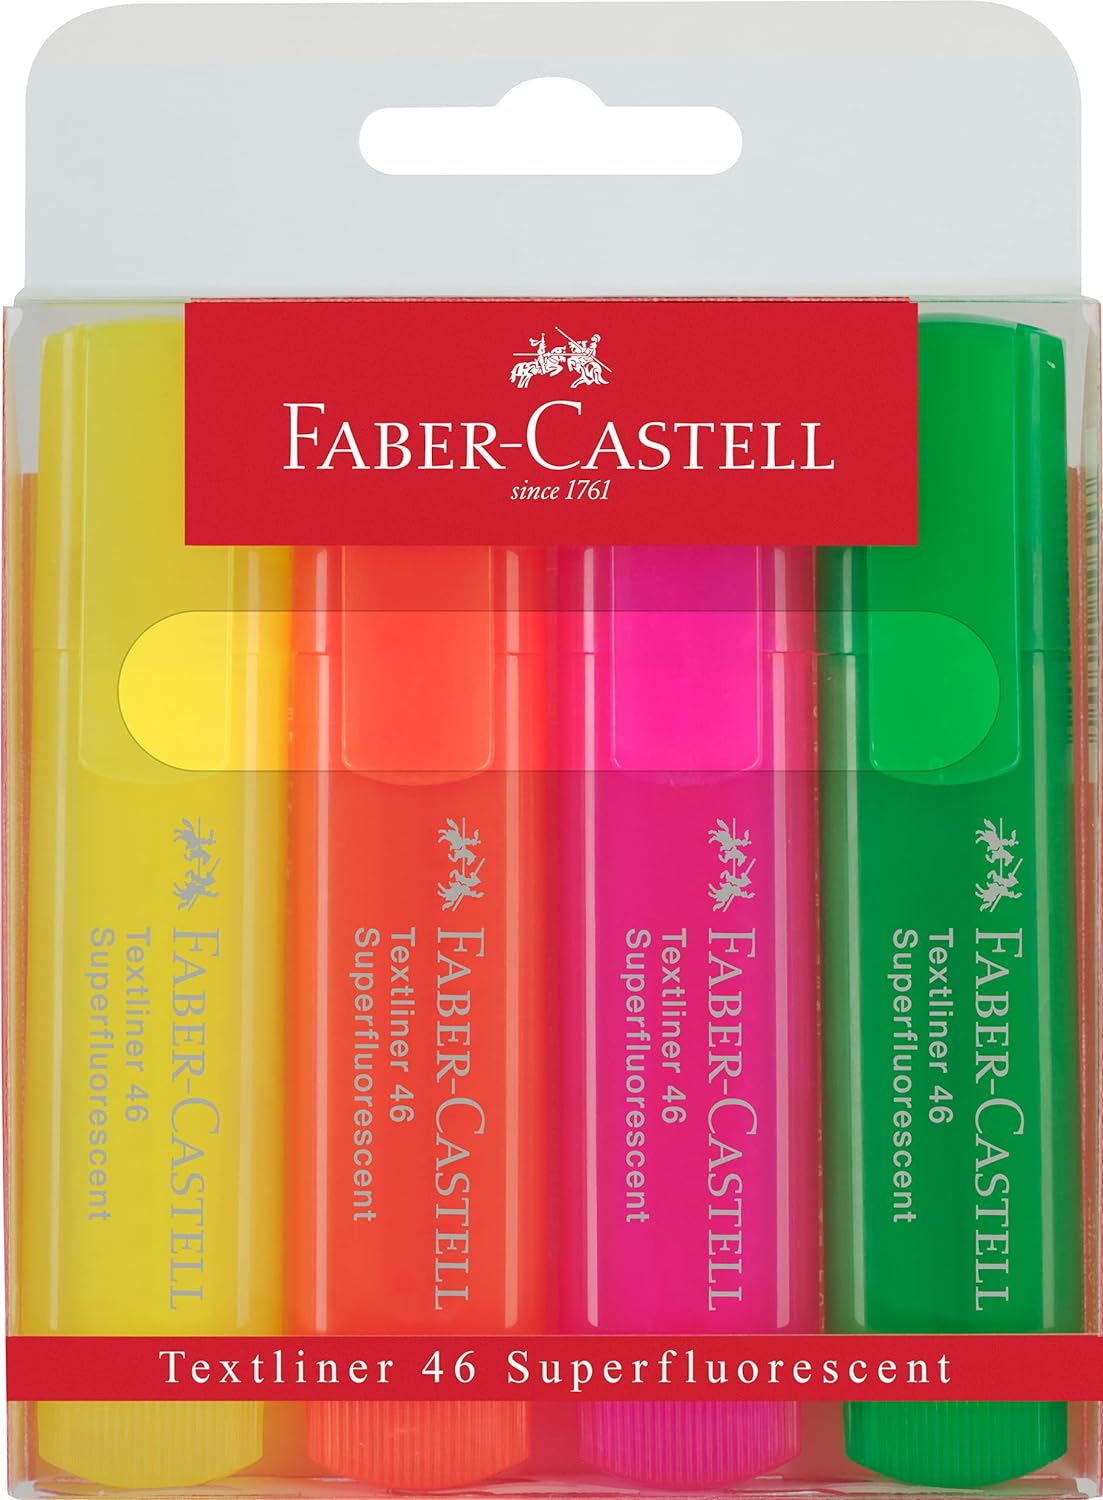 Faber-Castell Textliner 46 Superfluorescent Lot de 4 Feutres Fluorescents - Pointe Biseautée - Trait entre 1mm et 5mm - Encre à Base d'Eau - Couleurs Assorties